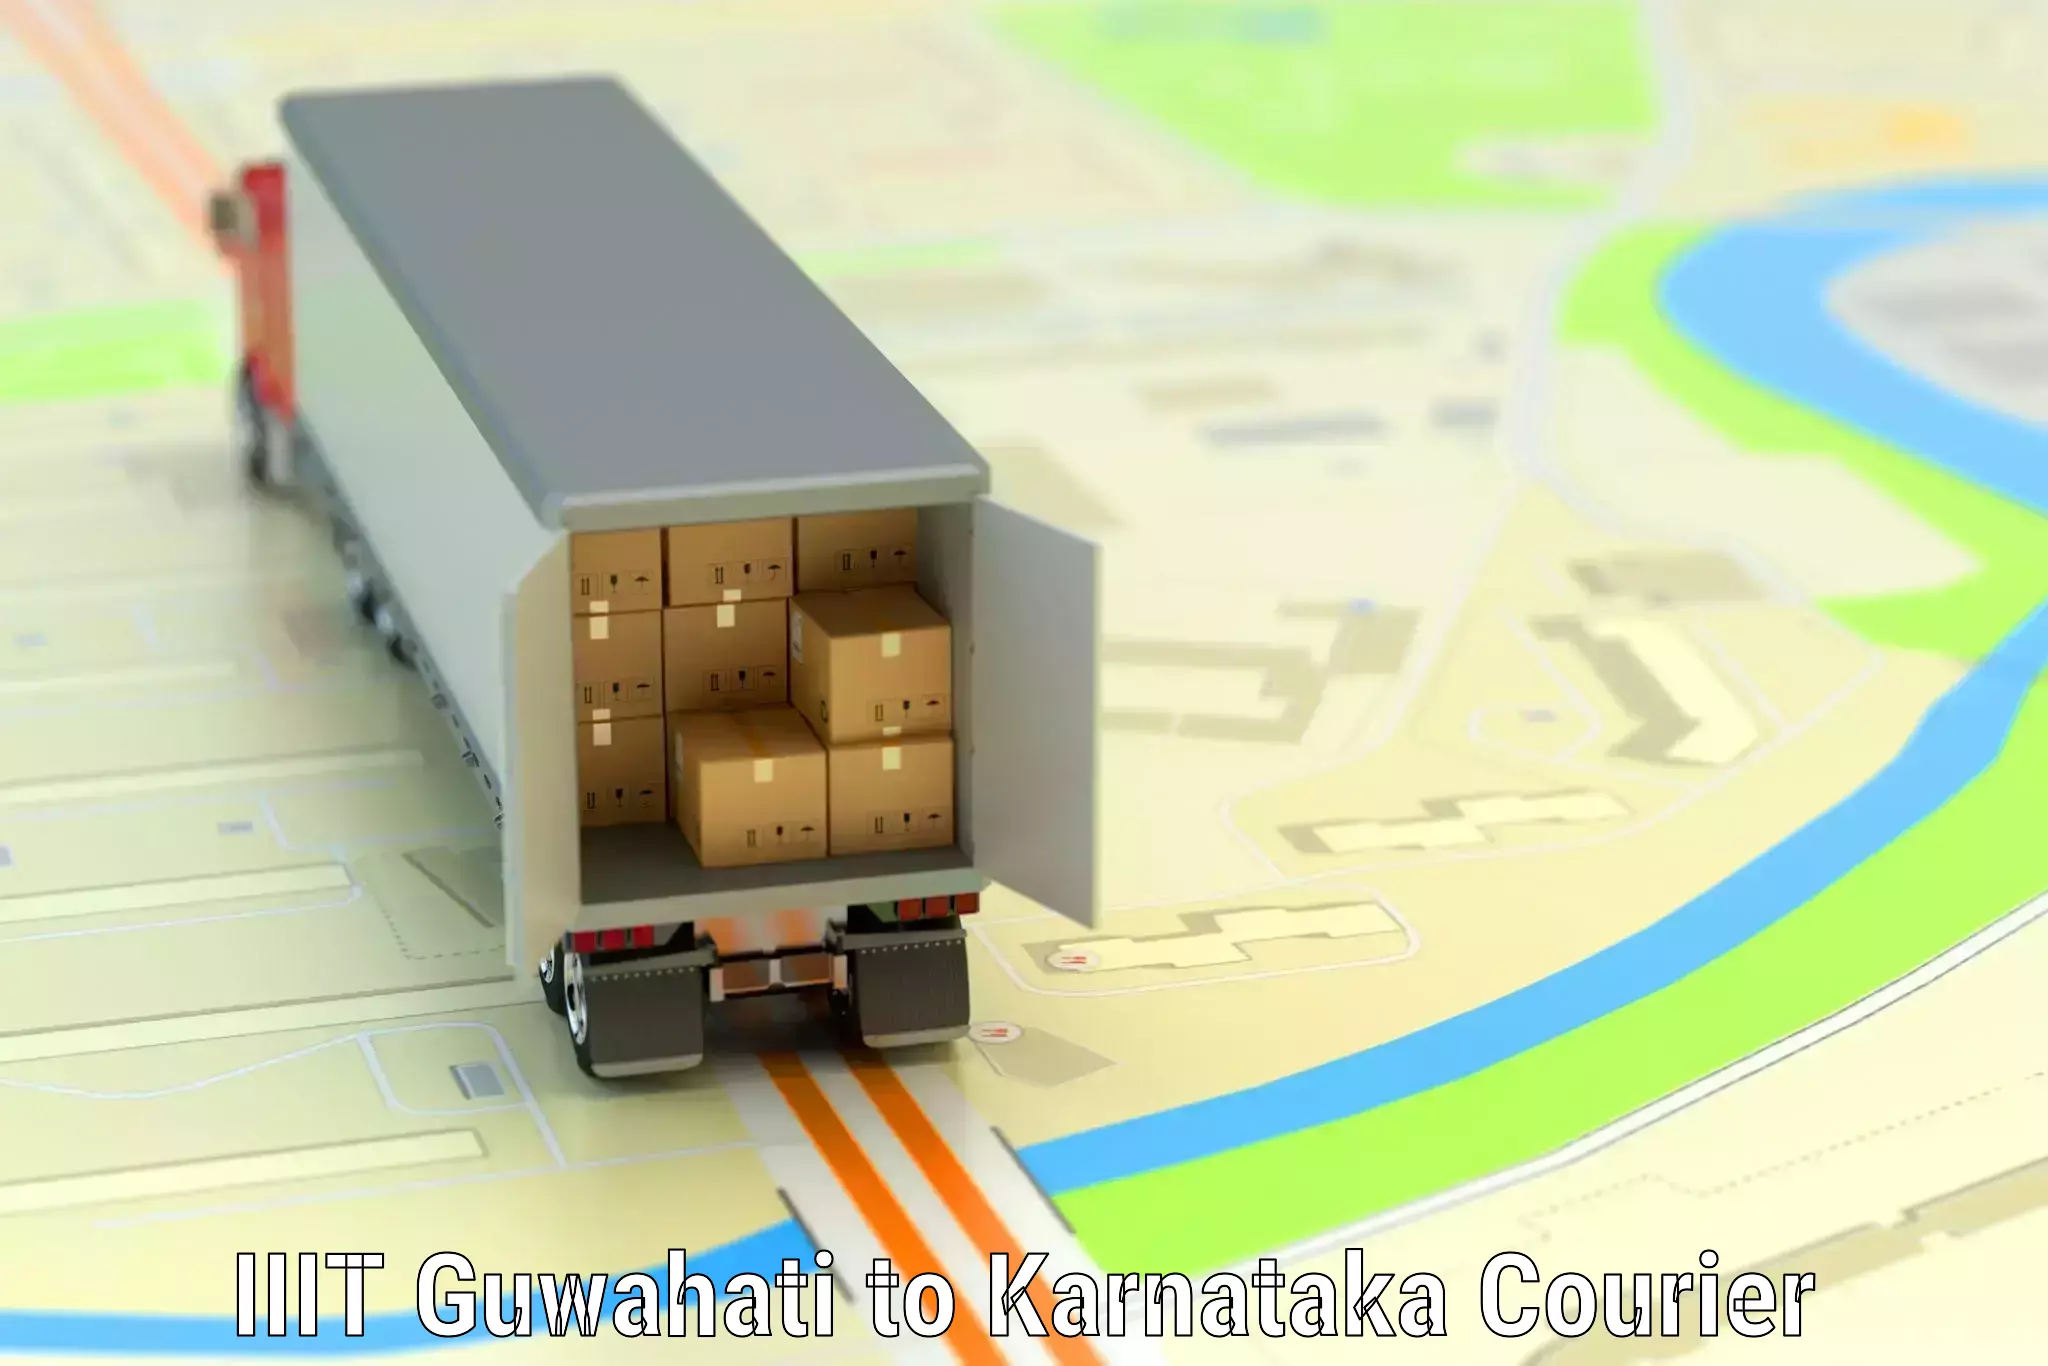 Baggage delivery support IIIT Guwahati to Krishnarajanagara